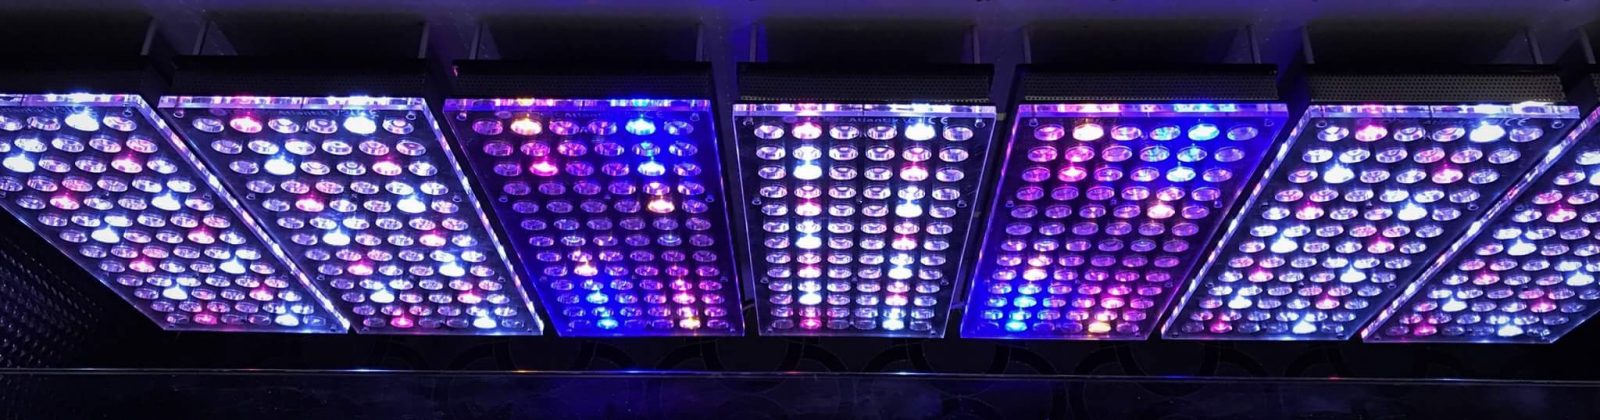 అట్లాంటిక్ ఉత్తమ అక్వేరియం LED లైట్